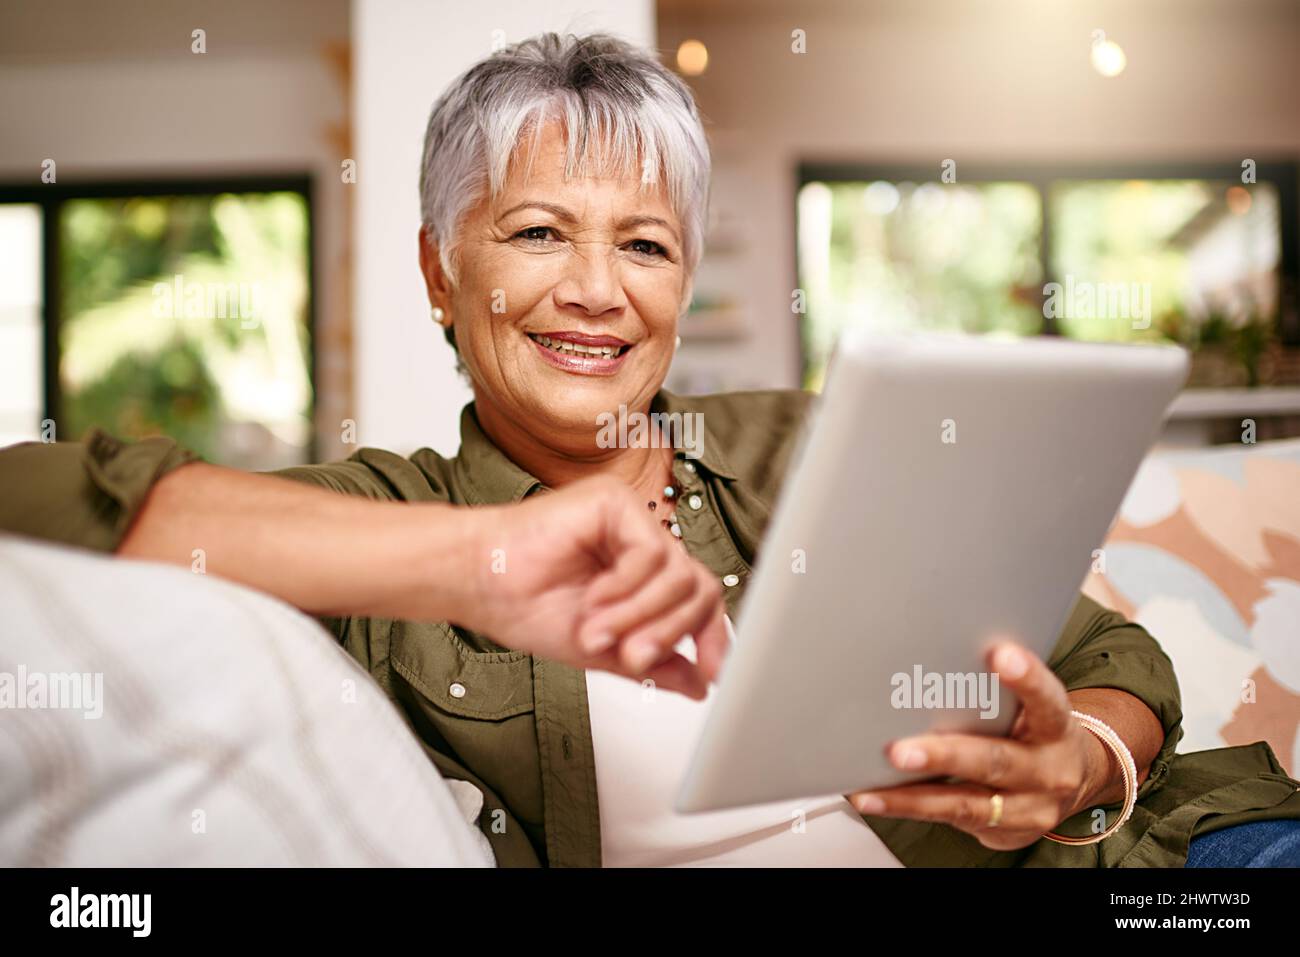 Jetzt habe ich mehr Zeit, meine Lieblingsfilme zu streamen. Porträt einer glücklichen älteren Frau, die sich zu Hause mit ihrem digitalen Tablet auf dem Sofa entspannt. Stockfoto